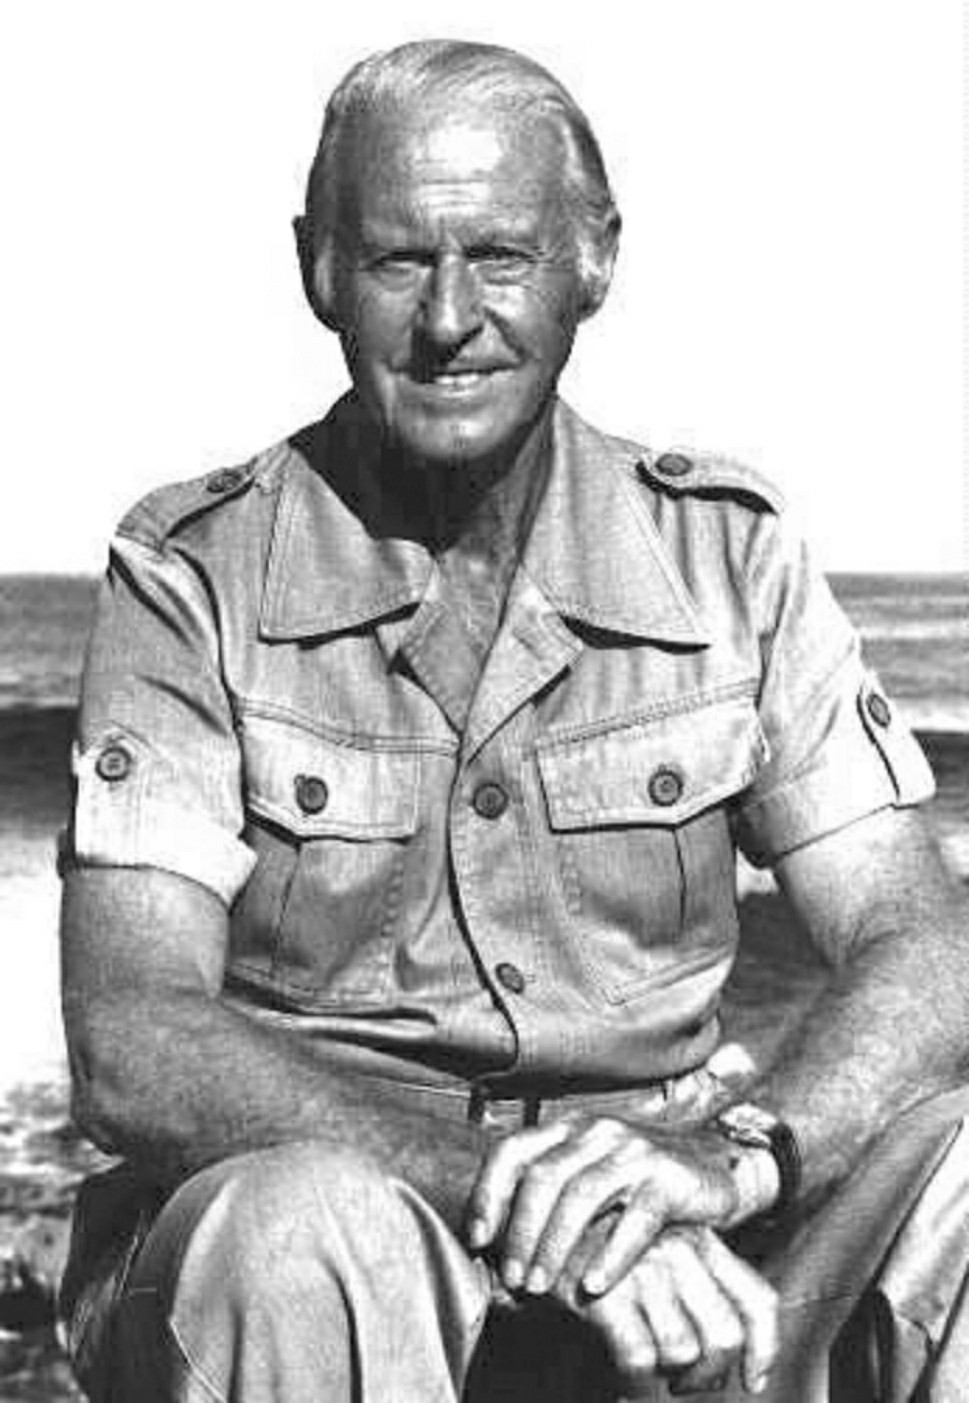 Portrait ntawm Thor Heyerdahl, raws li tus neeg loj hlob tuaj tshawb.